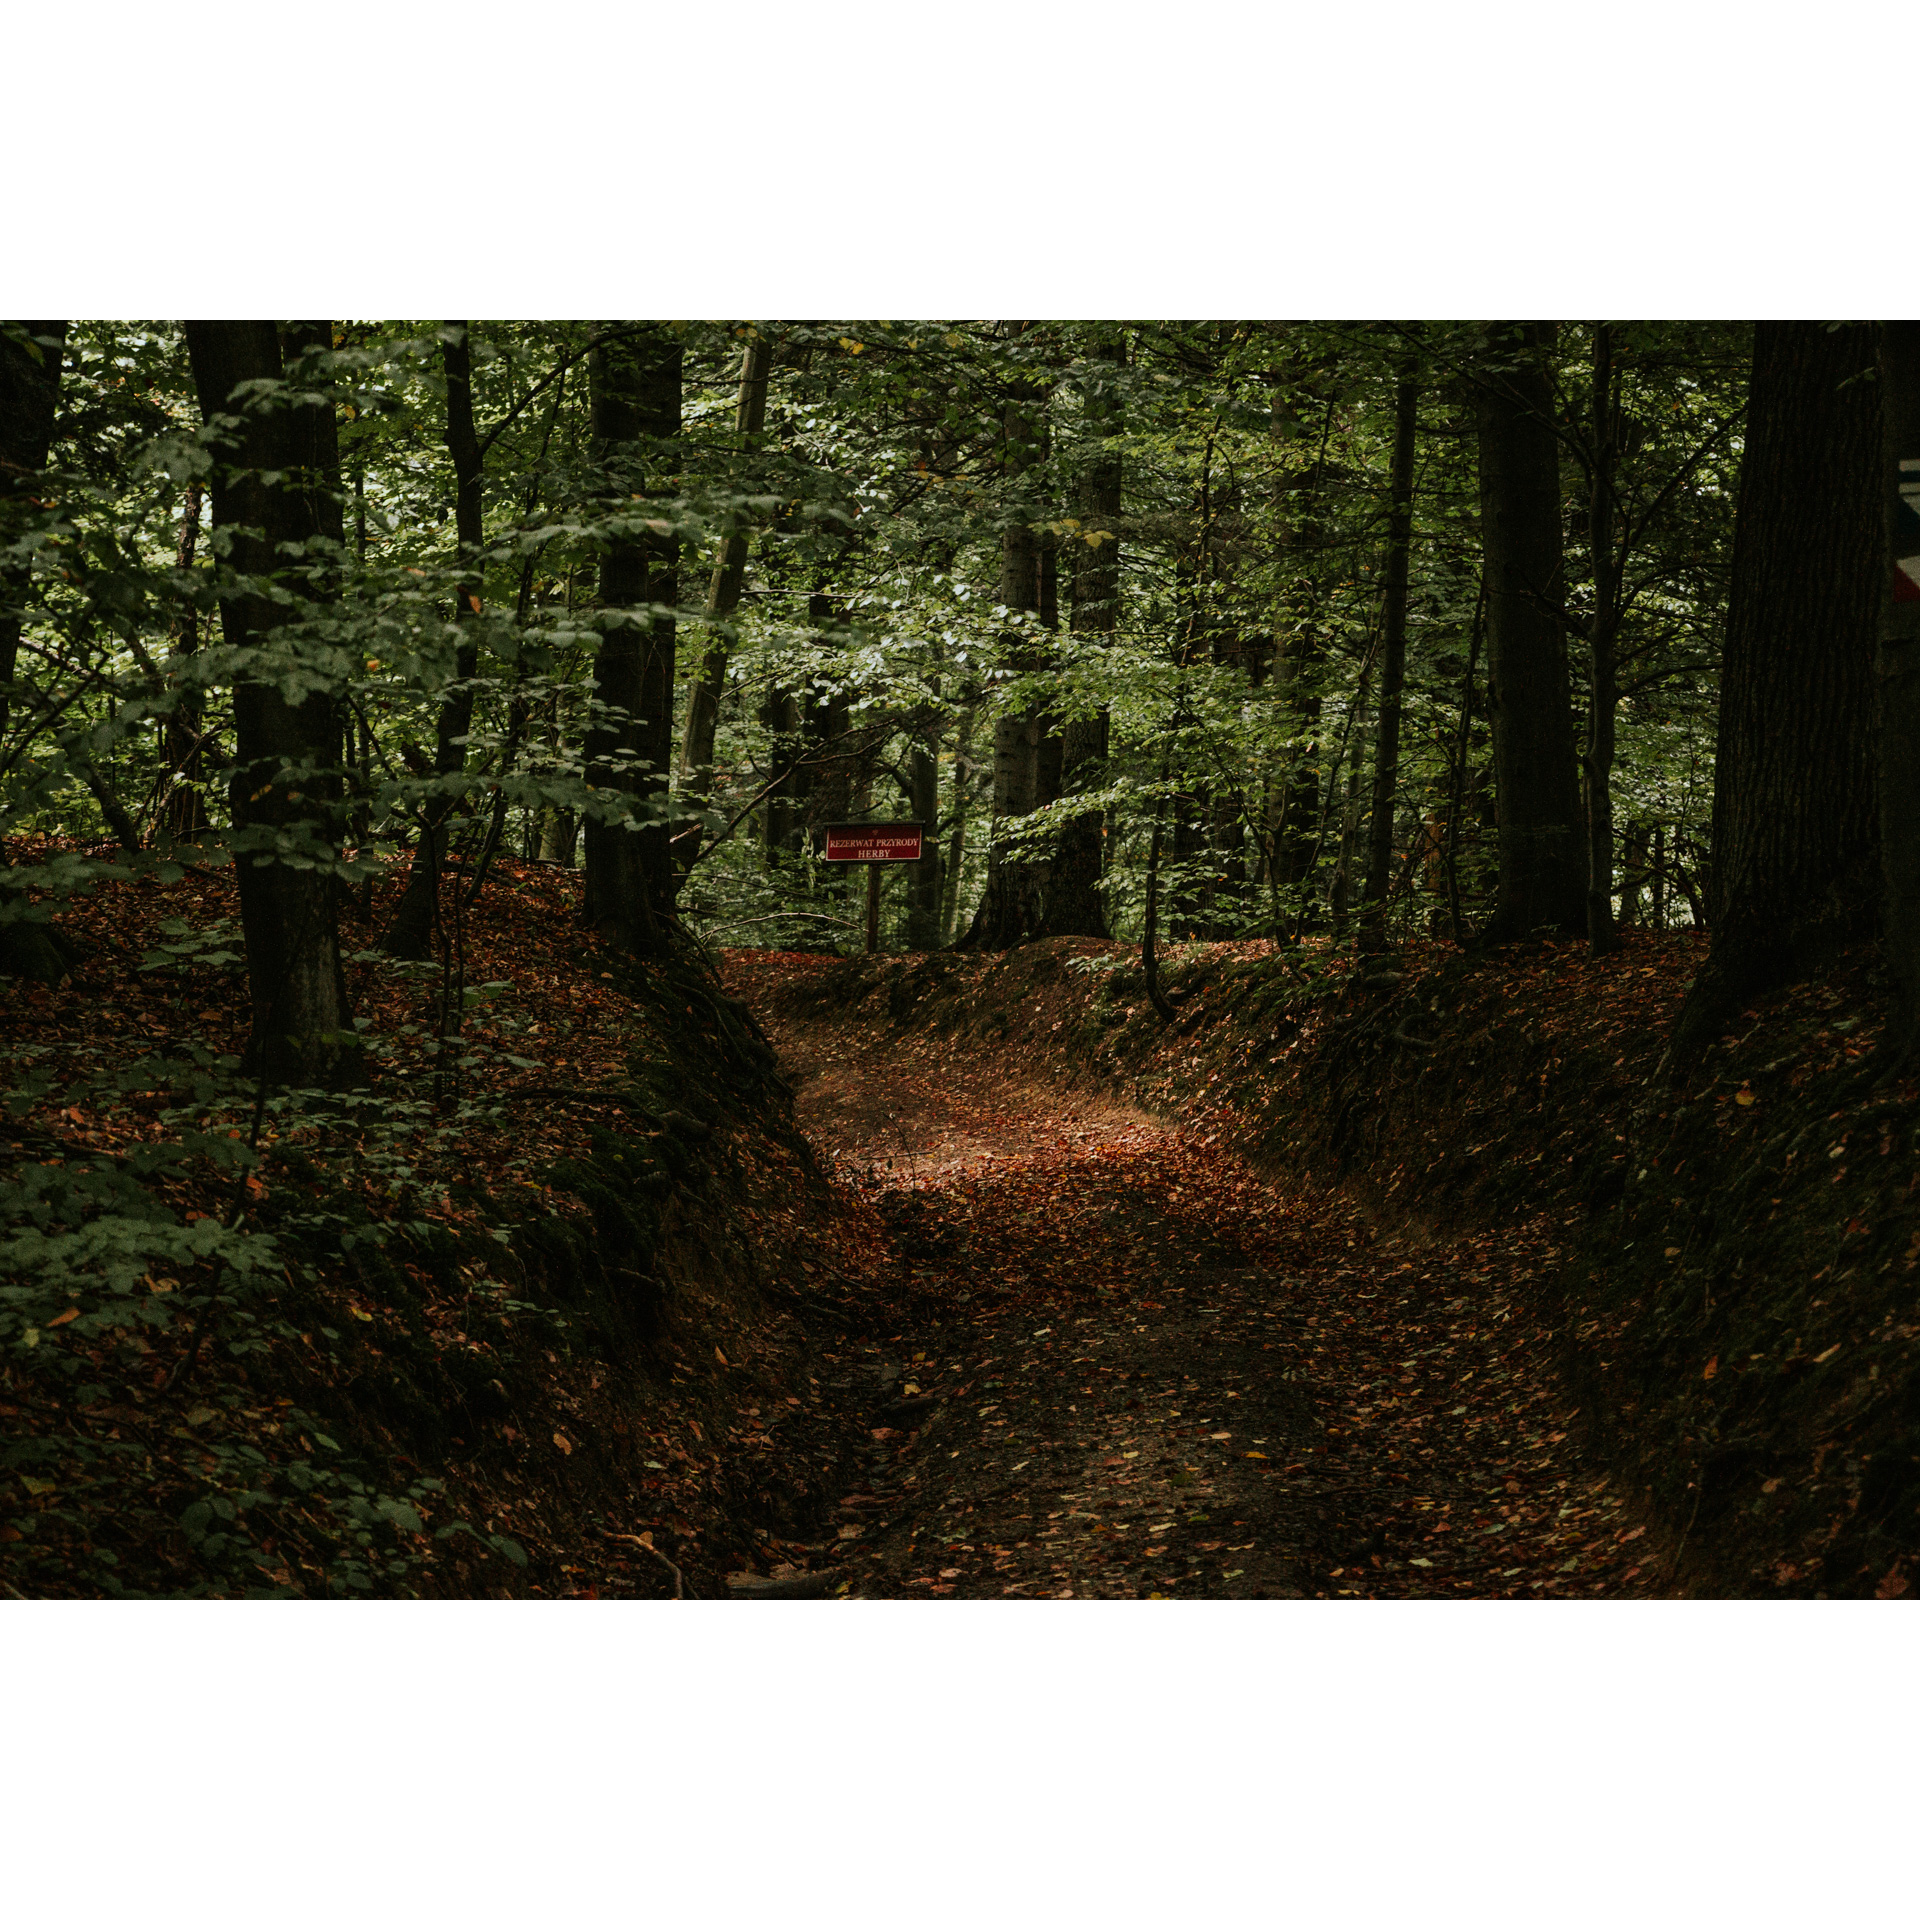 Droga w lesie z widoczną czerwoną tabliczką wśród drzew